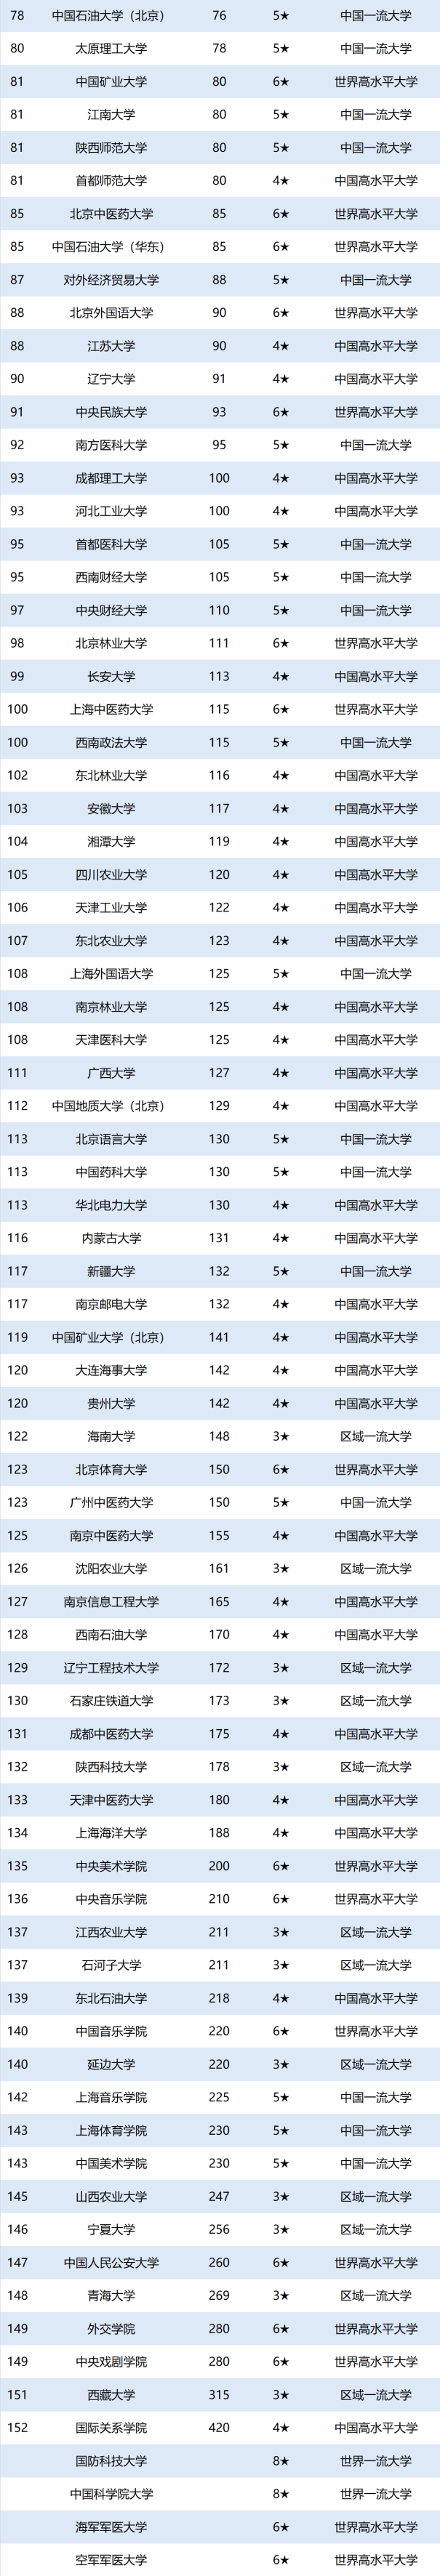 北京大学勇夺2020中国重点大学排名冠军,94所高校跻身全国百强行列